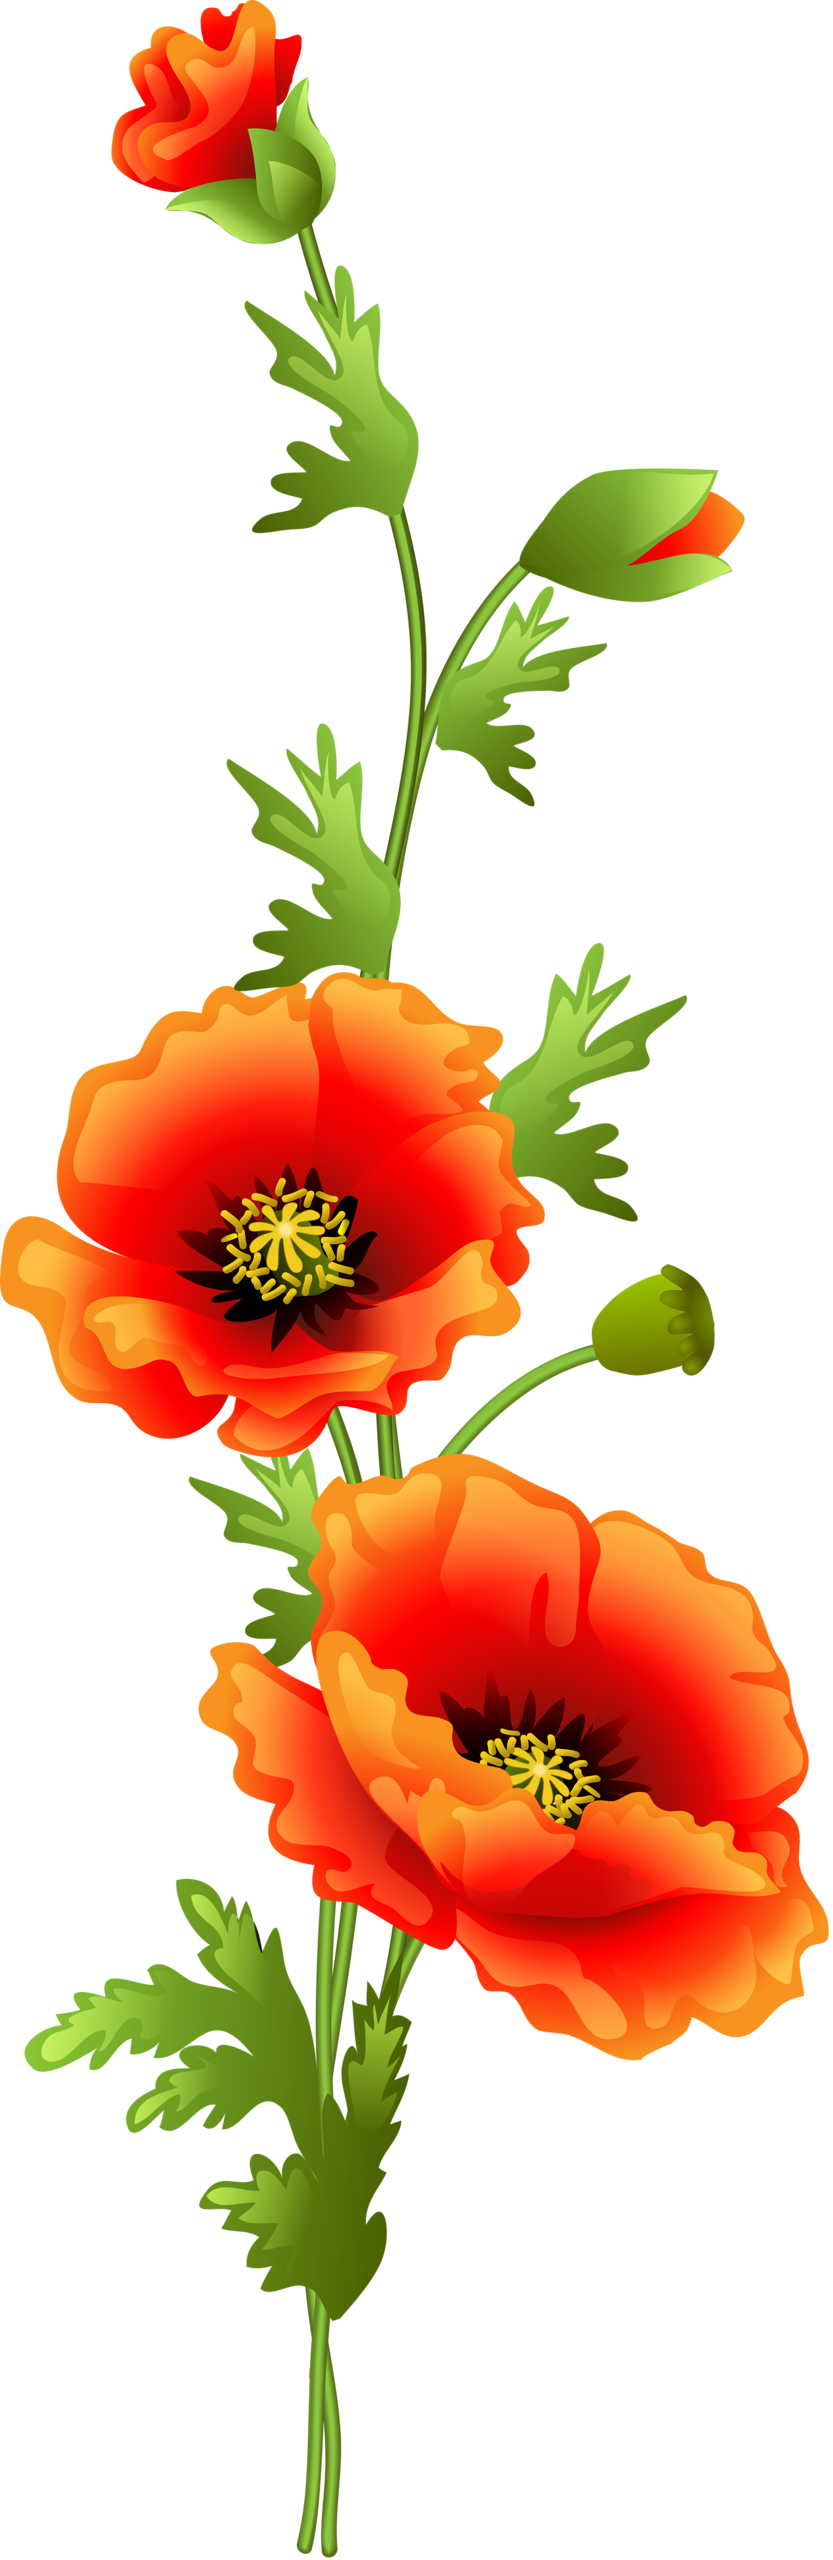 Flowers - Orange Poppy Flower Clip Art (833x2560)